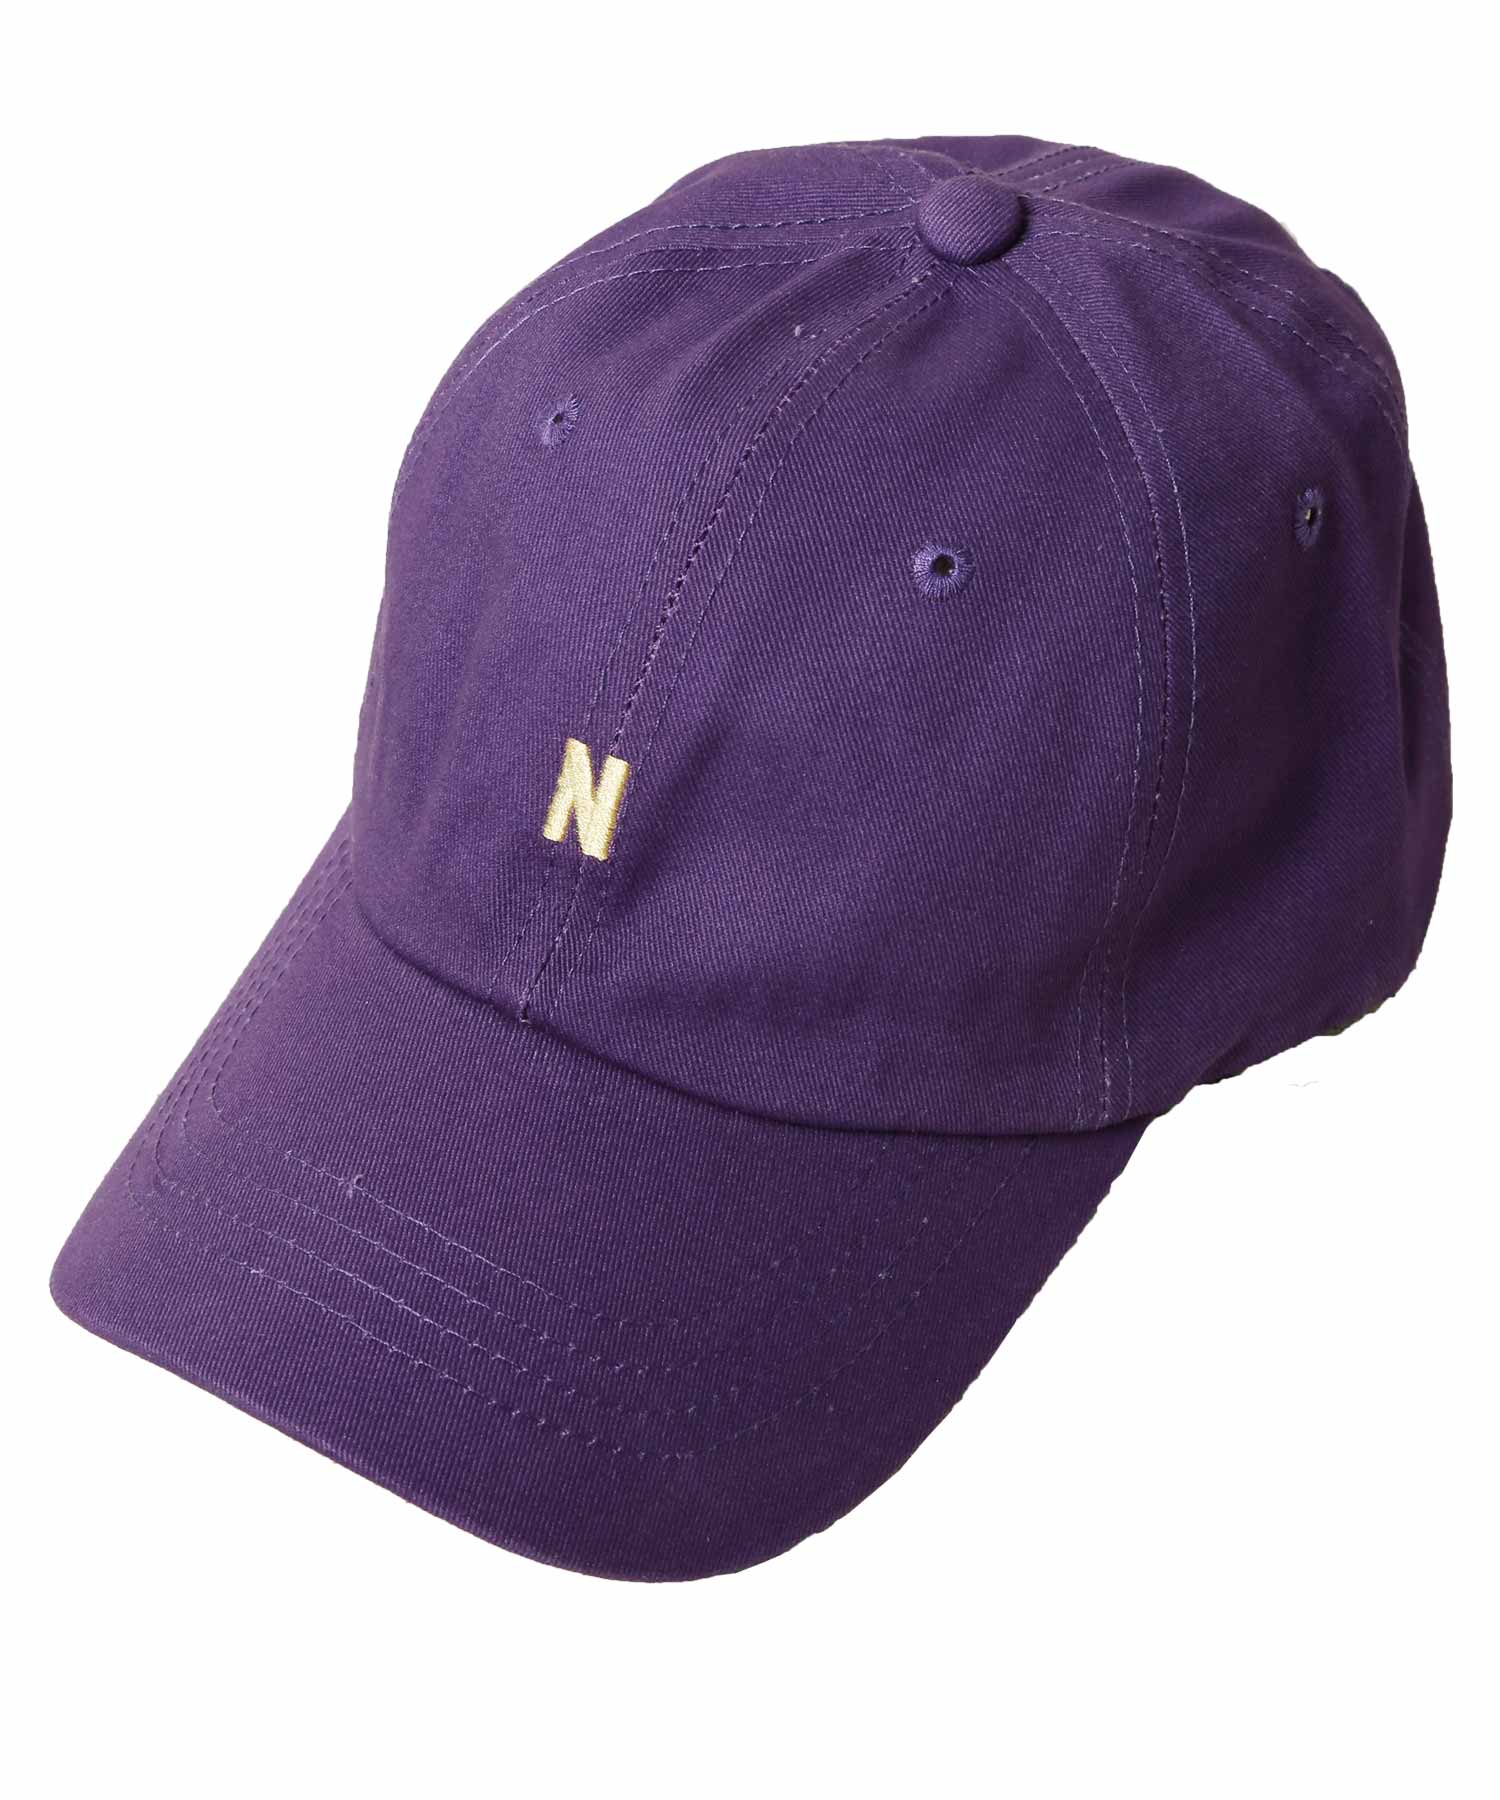 ワンポイントロゴ刺繍キャップ / キャップ メンズ 帽子 CAP(502436847